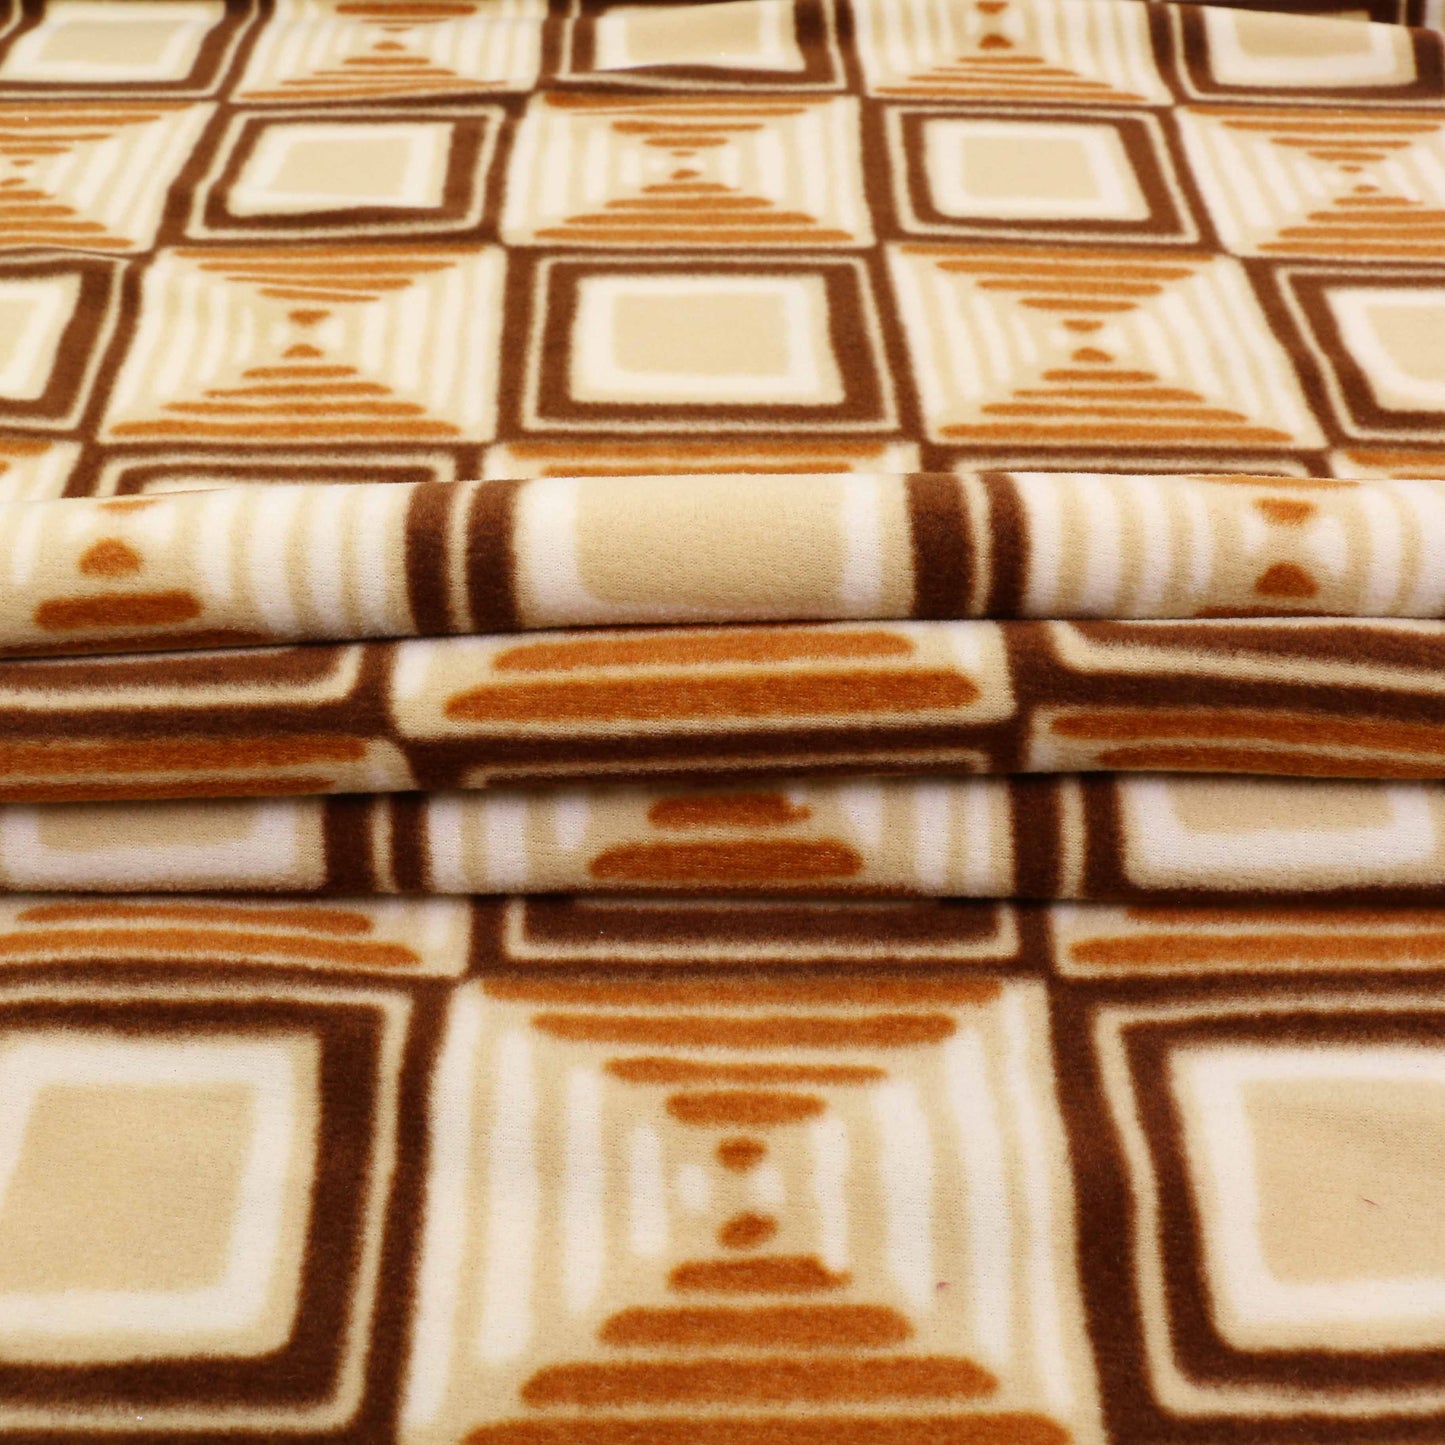 Fleece Fabric - Brown, beige